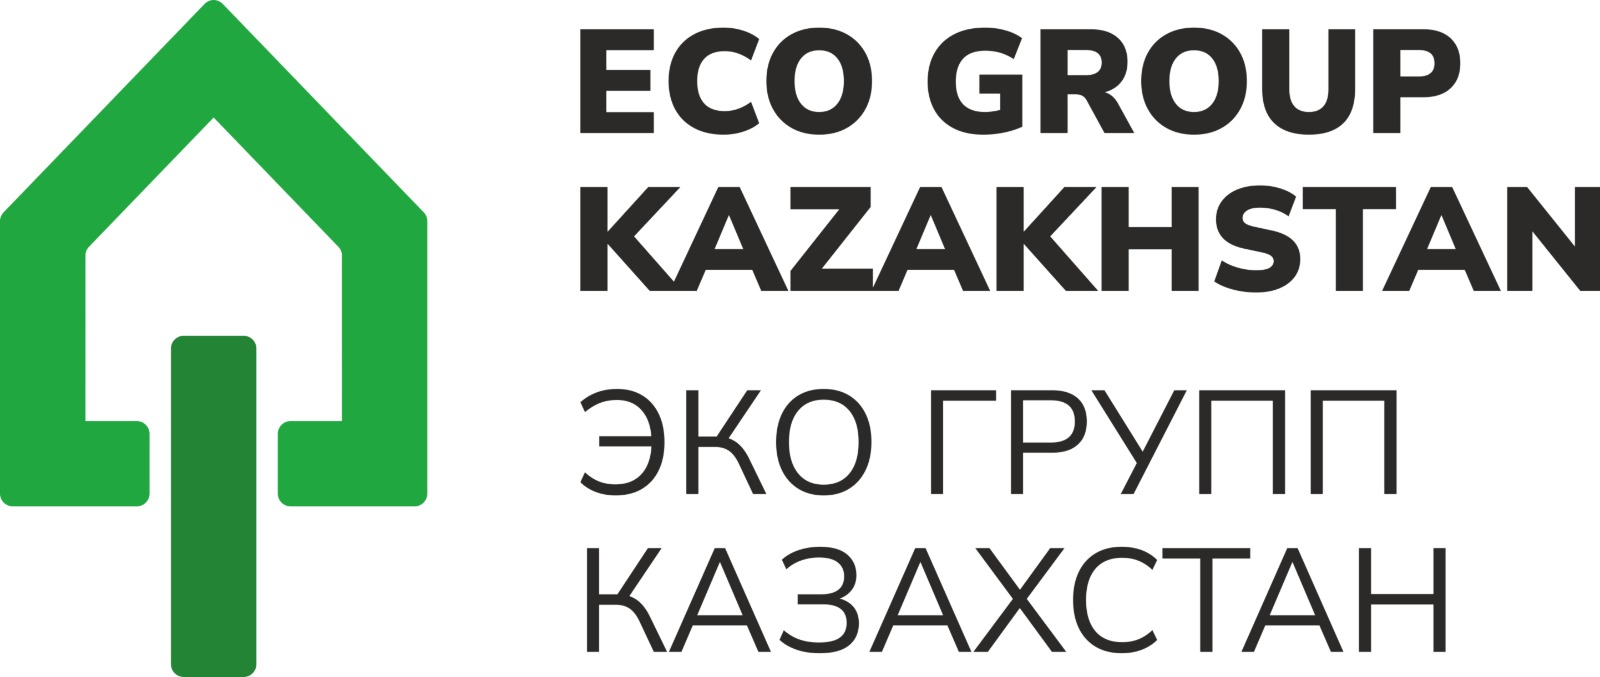 ECO Group Kazakhstan LLP